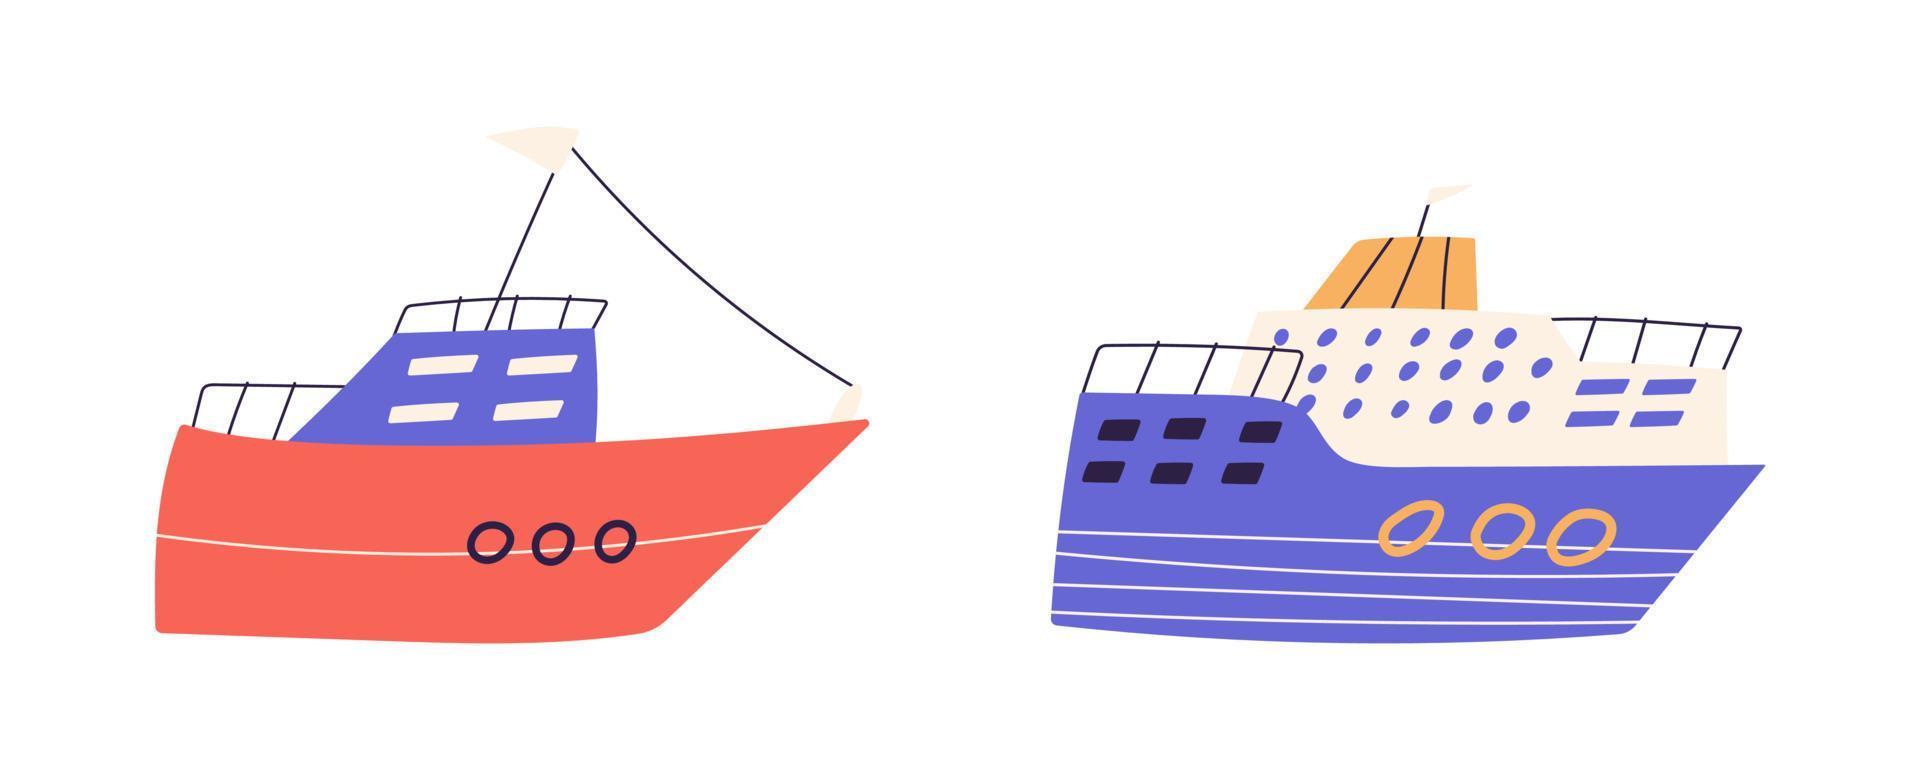 lindo conjunto de barcos o cruceros, ilustración vectorial plana de dibujos animados aislada en fondo blanco. embarcaciones marinas infantiles dibujadas a mano. concepto de vacaciones de verano. vector